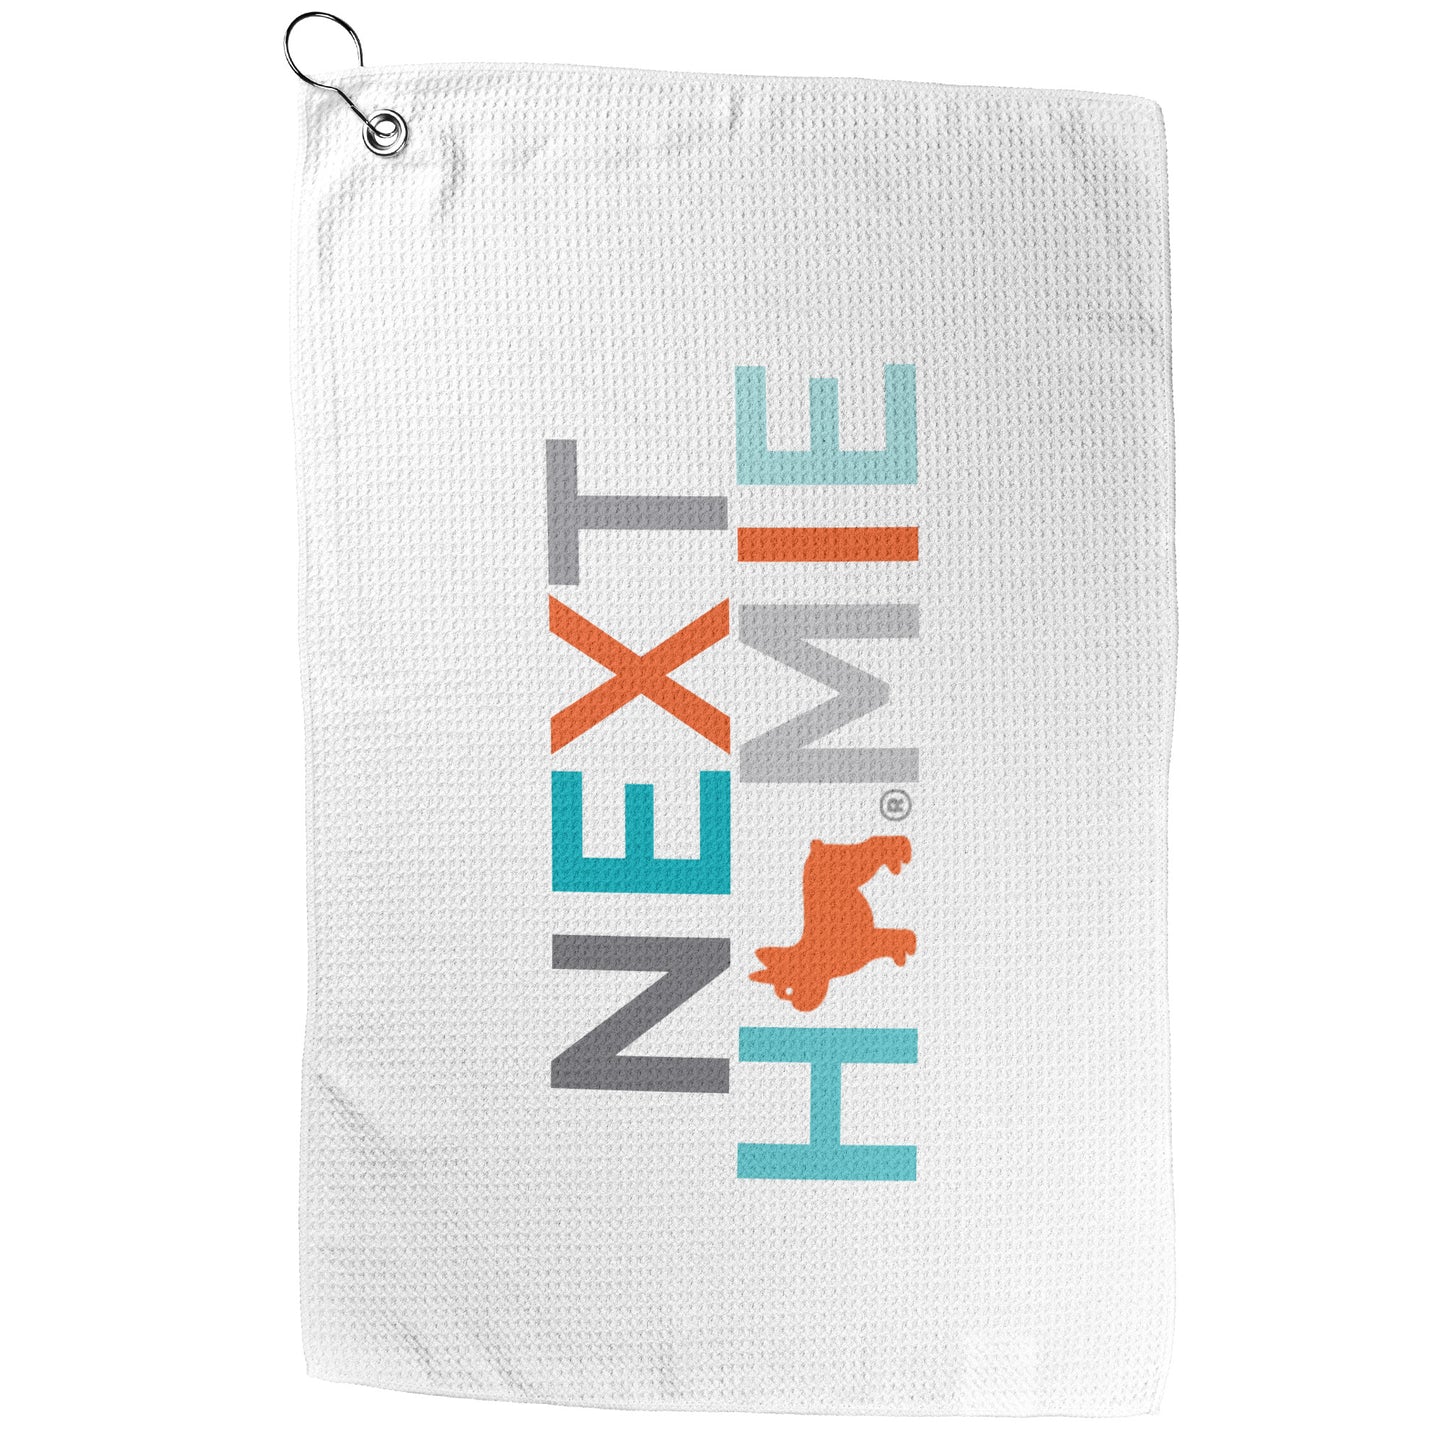 NextHomie Golf Towel